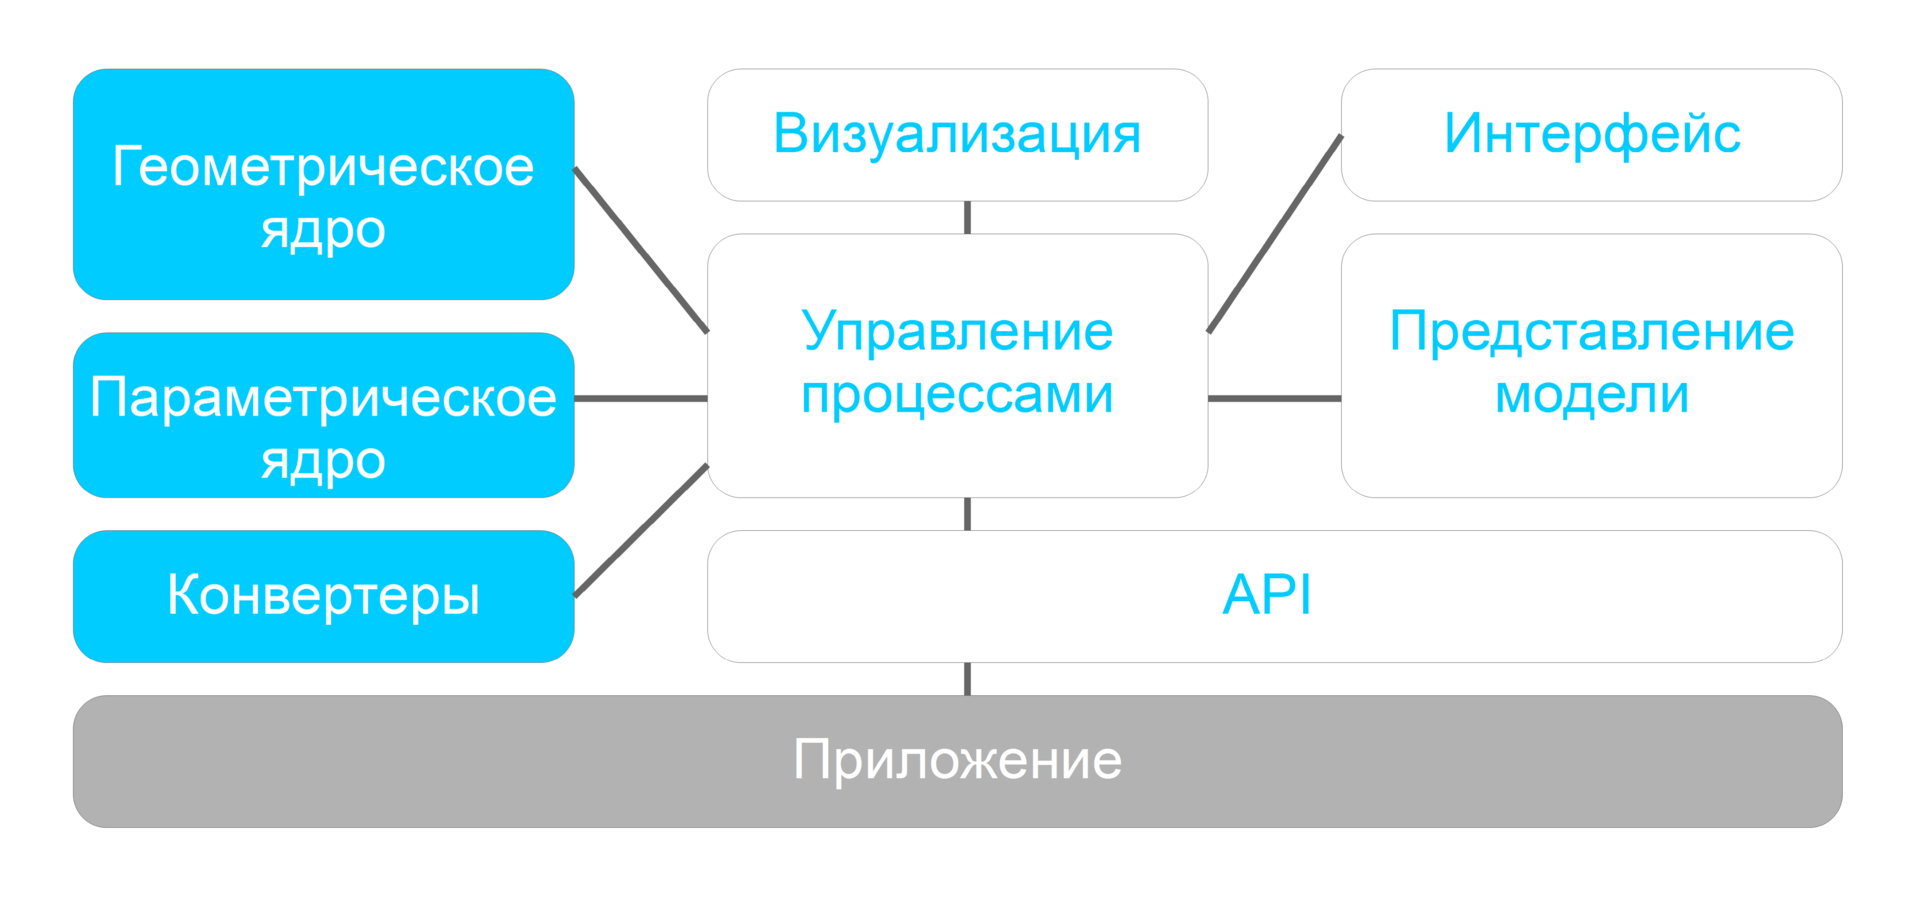 Взаимодействие через API